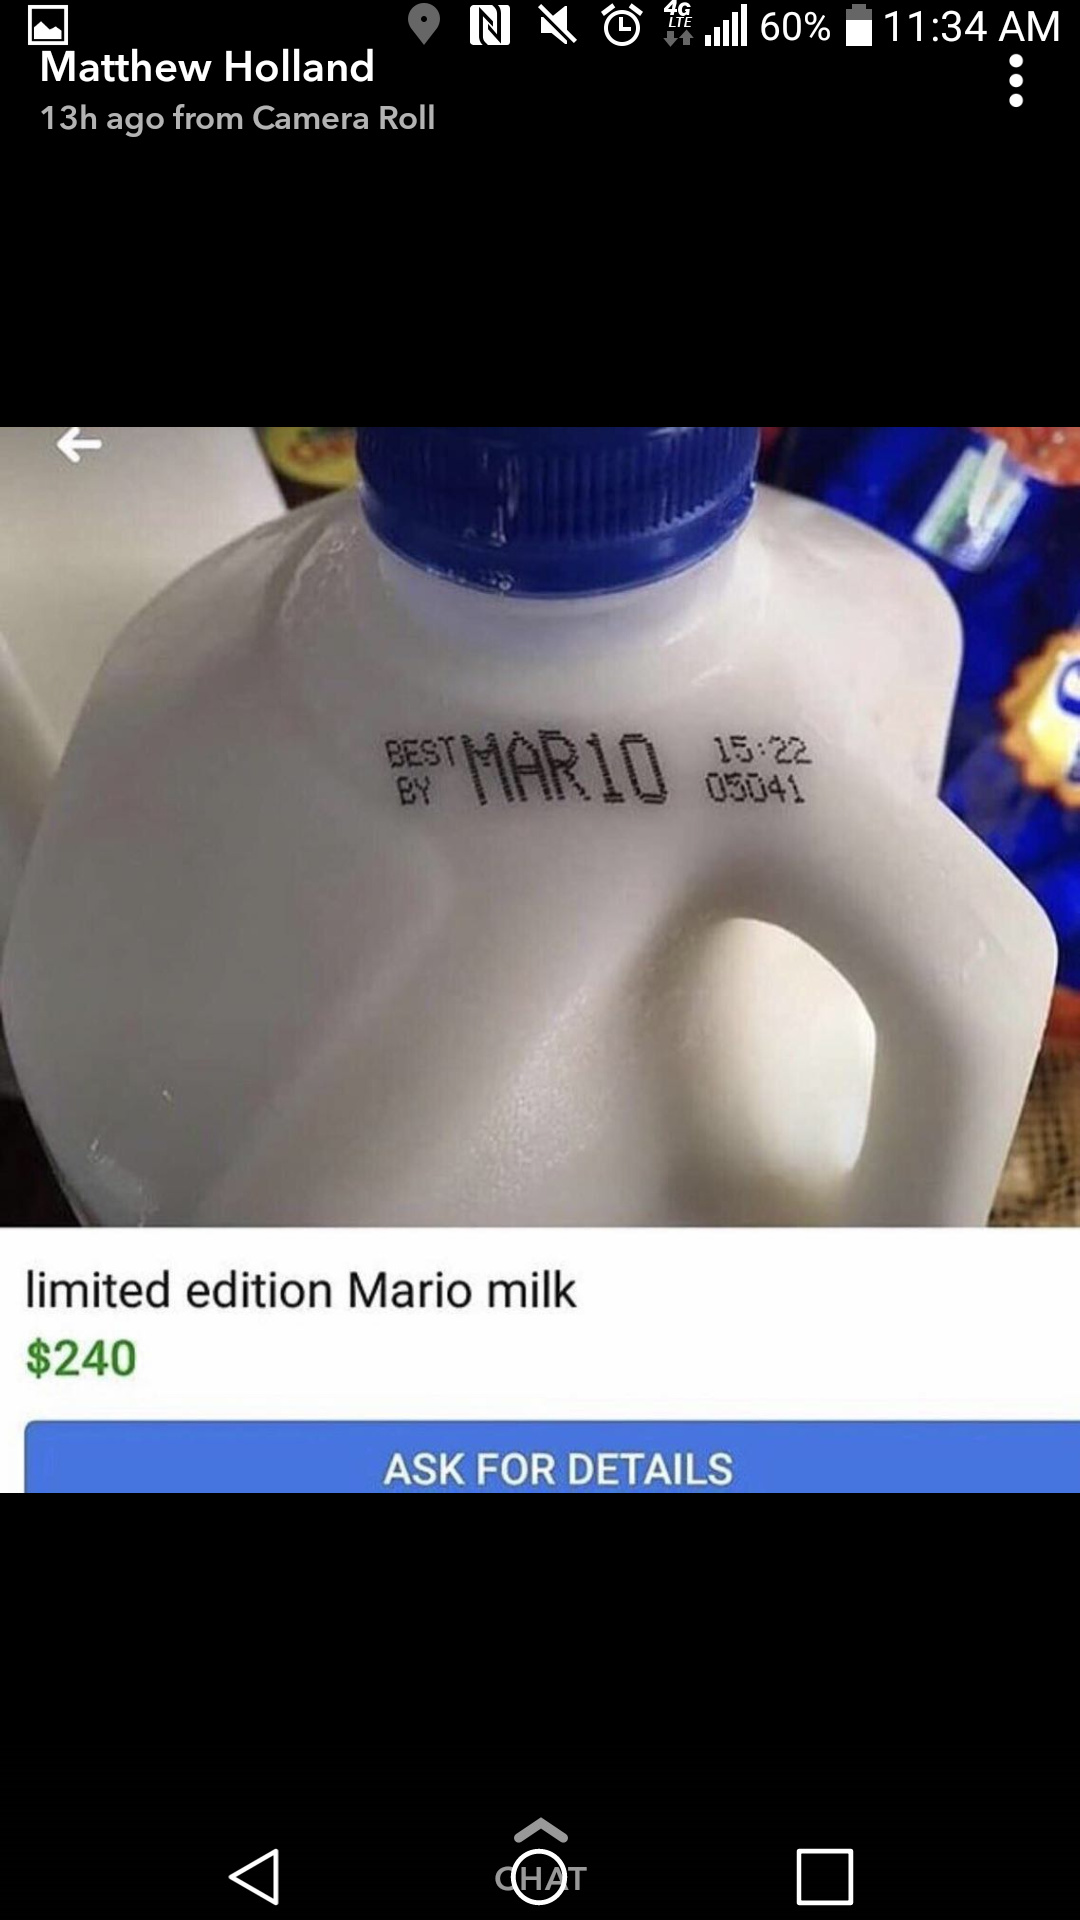 $240 for expired milk? Sweet deal! - meme